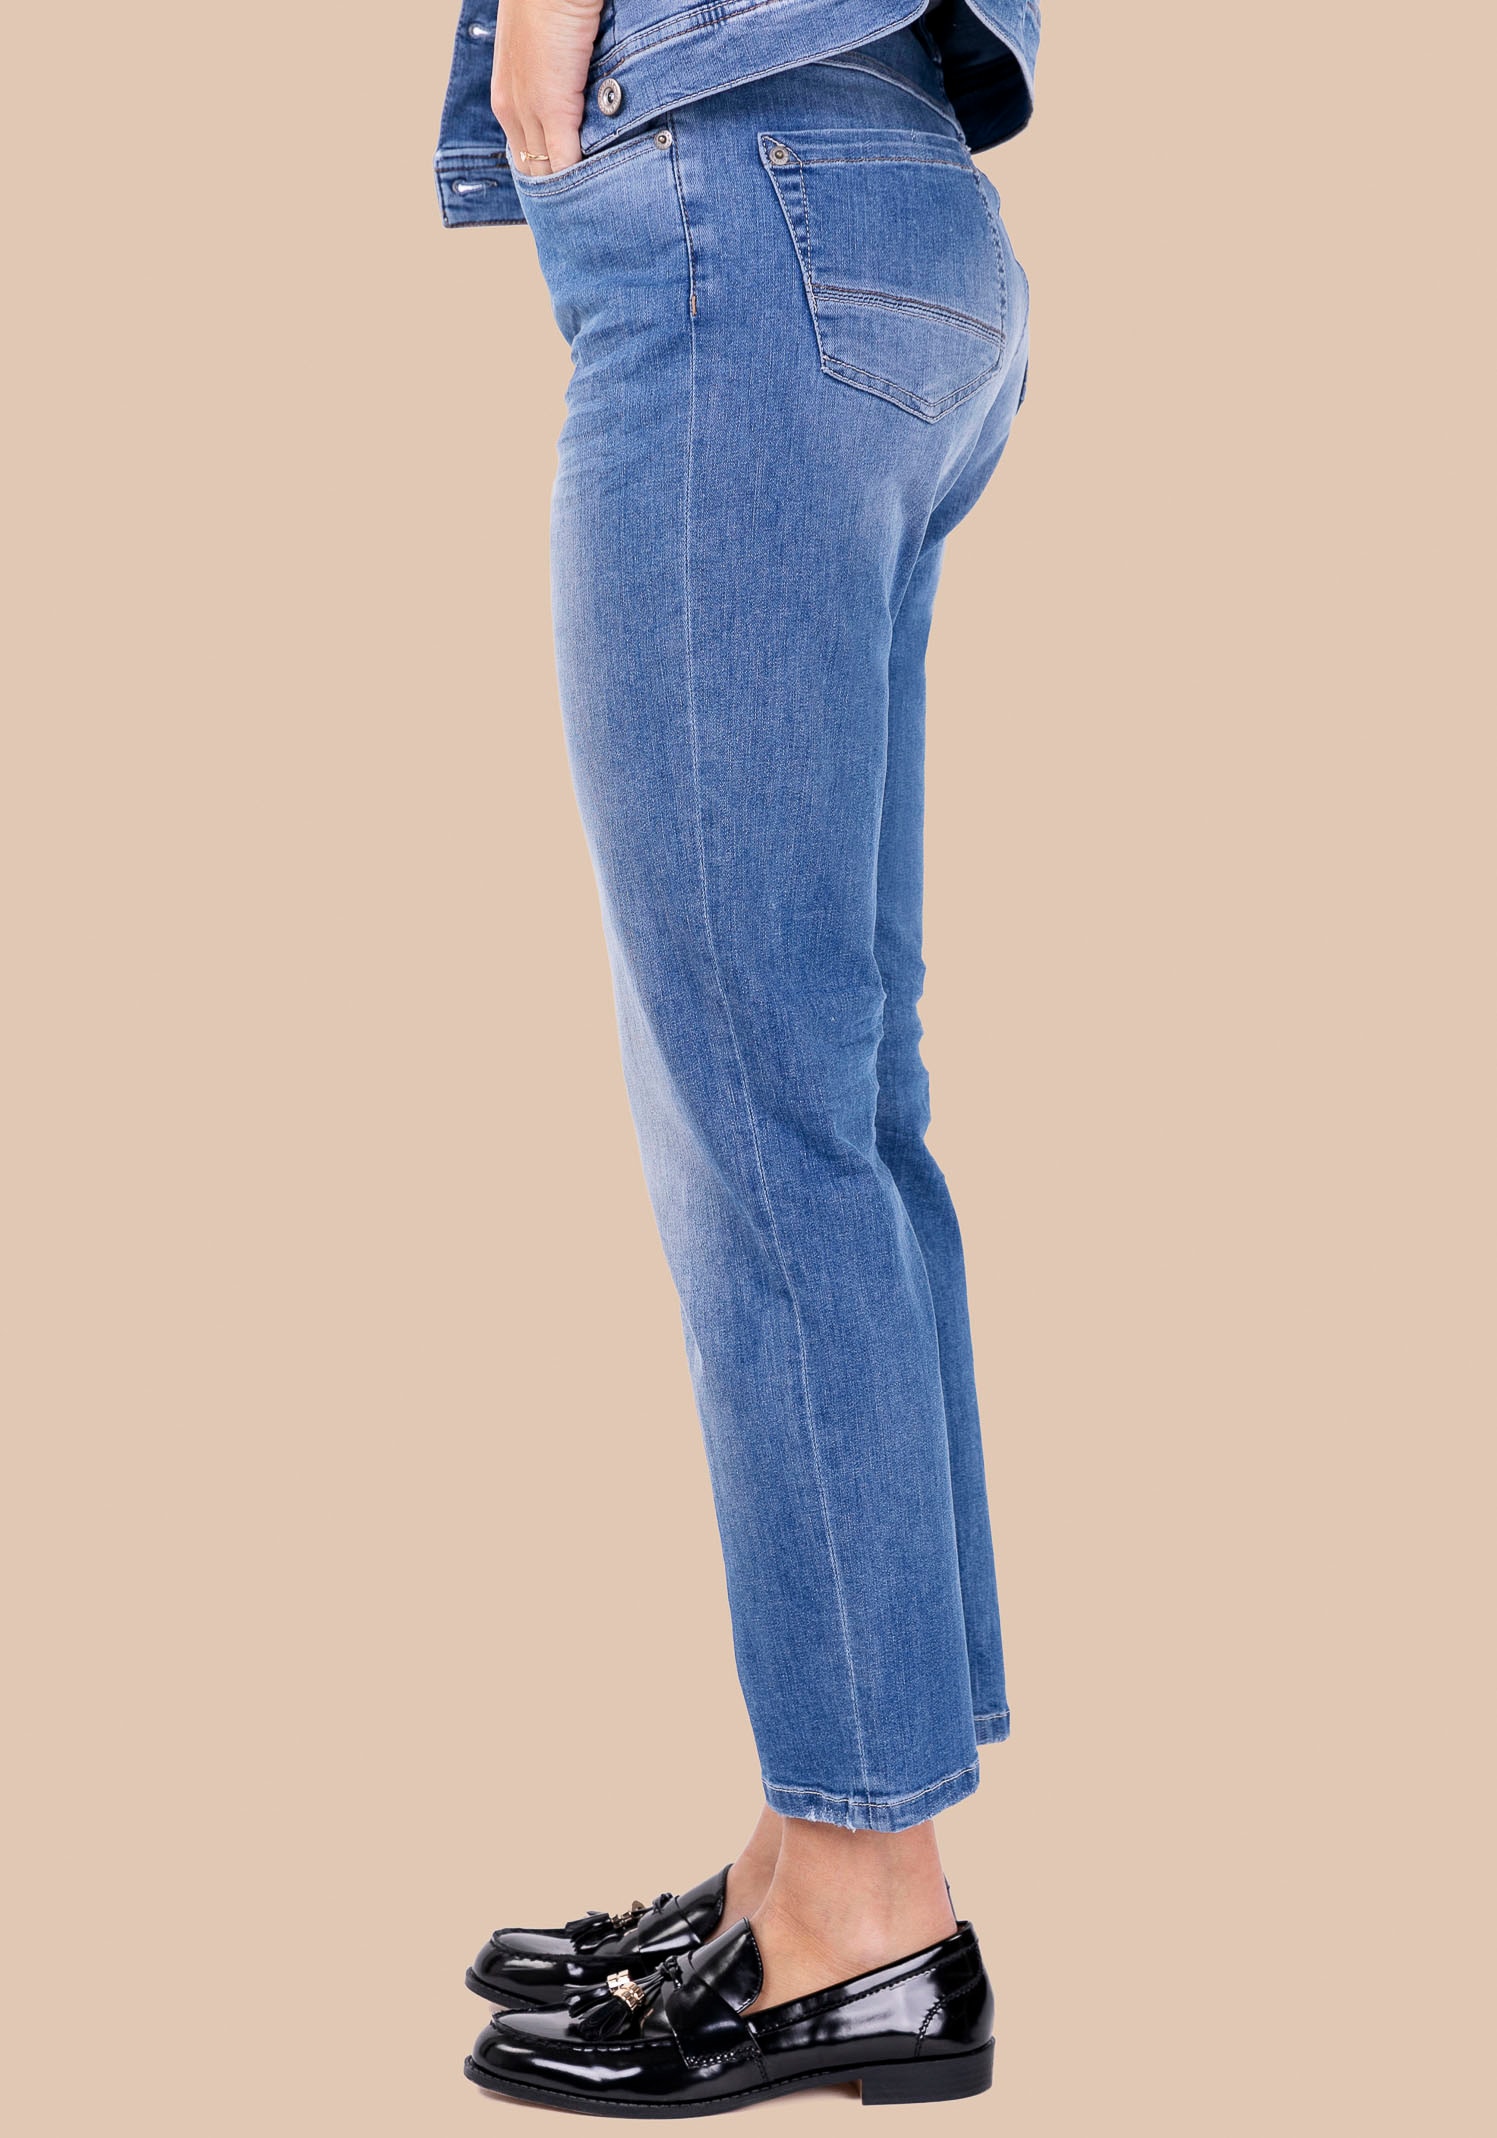 BLUE FIRE Straight-Jeans »JULIE«, mit hoher Elastizität und ultimativen Komfort